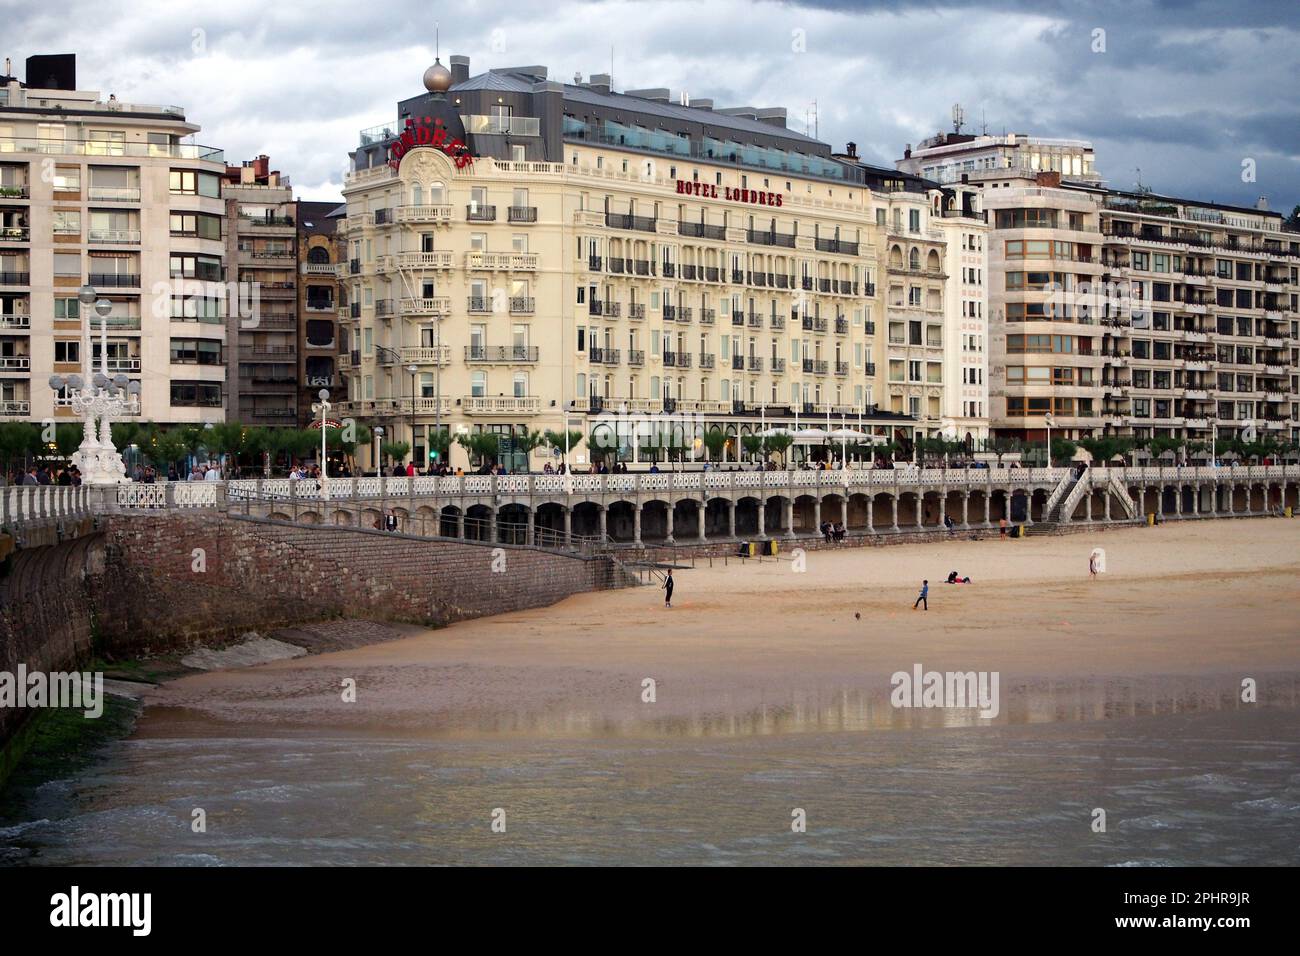 Das Ufer der Stadt, der Teil des Strandes von La Concha Bay, das historische Gebäude des Hotels de Londres, Donostia-San Sebastian, Baskenland, Spanien Stockfoto